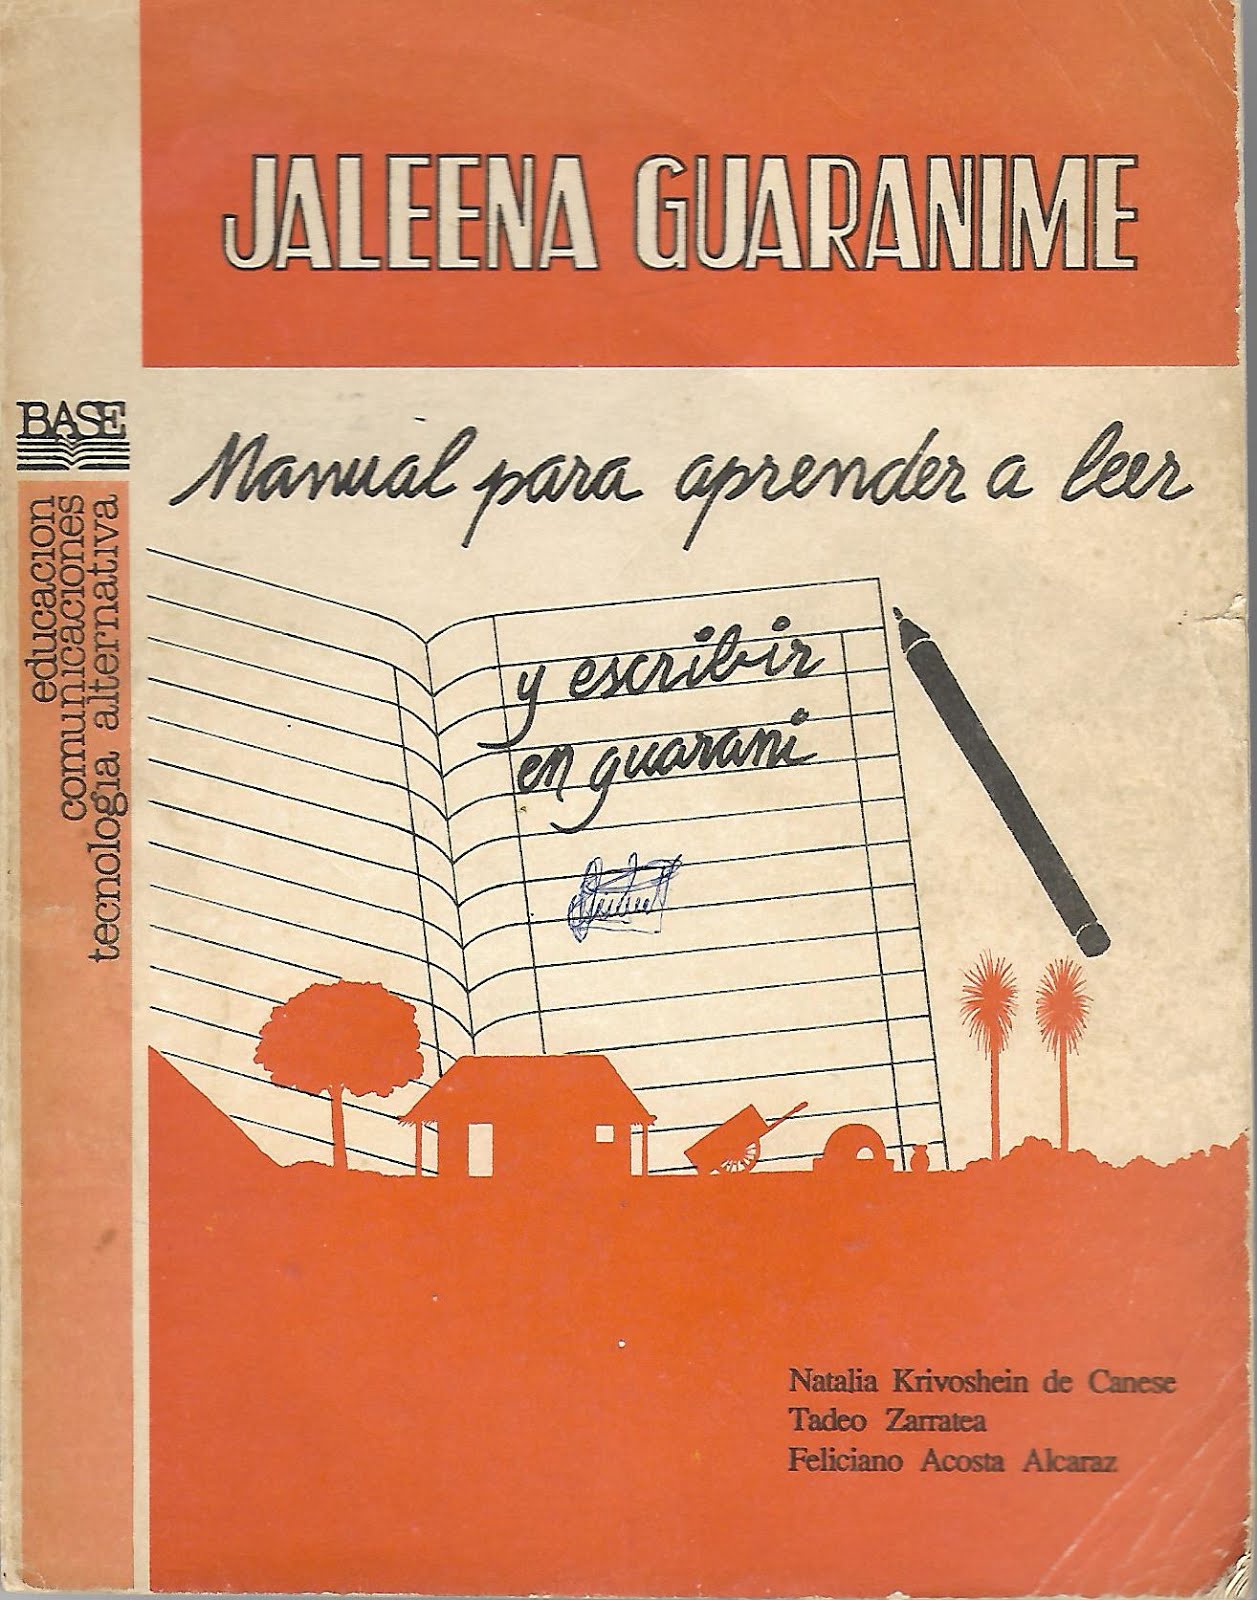 Jaleena Guaranime